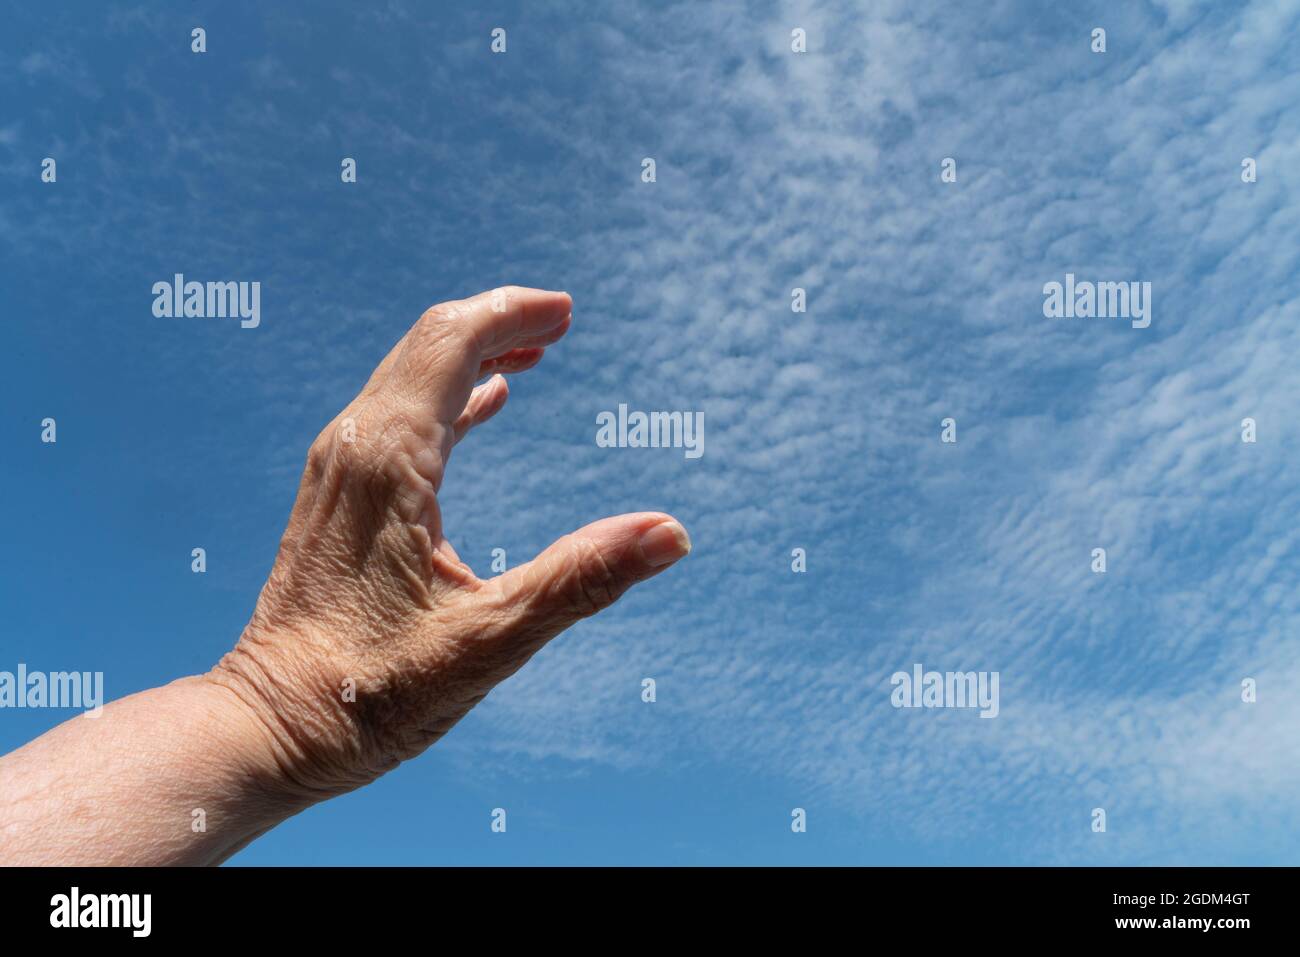 Nach dem Himmel greifen: Die Hand einer Frau, die versucht, ein Stück vom Himmel zu erfassen oder zu messen. 13. August 2021 Stockfoto